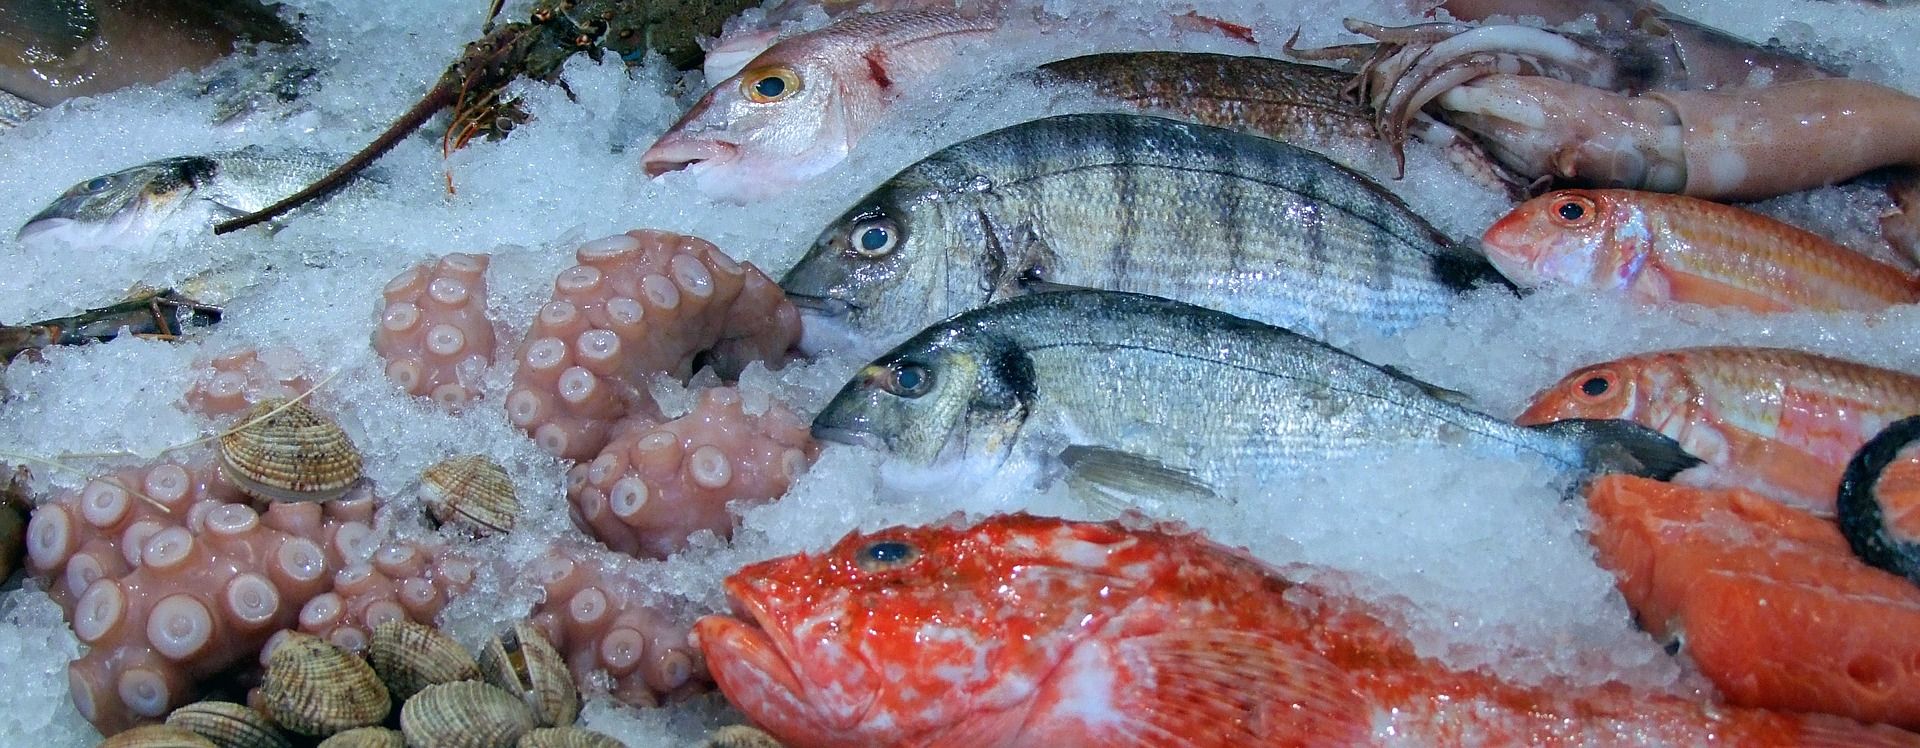 Diferentes tipos de pescados en una parada de mercado / Foto: Pixabay